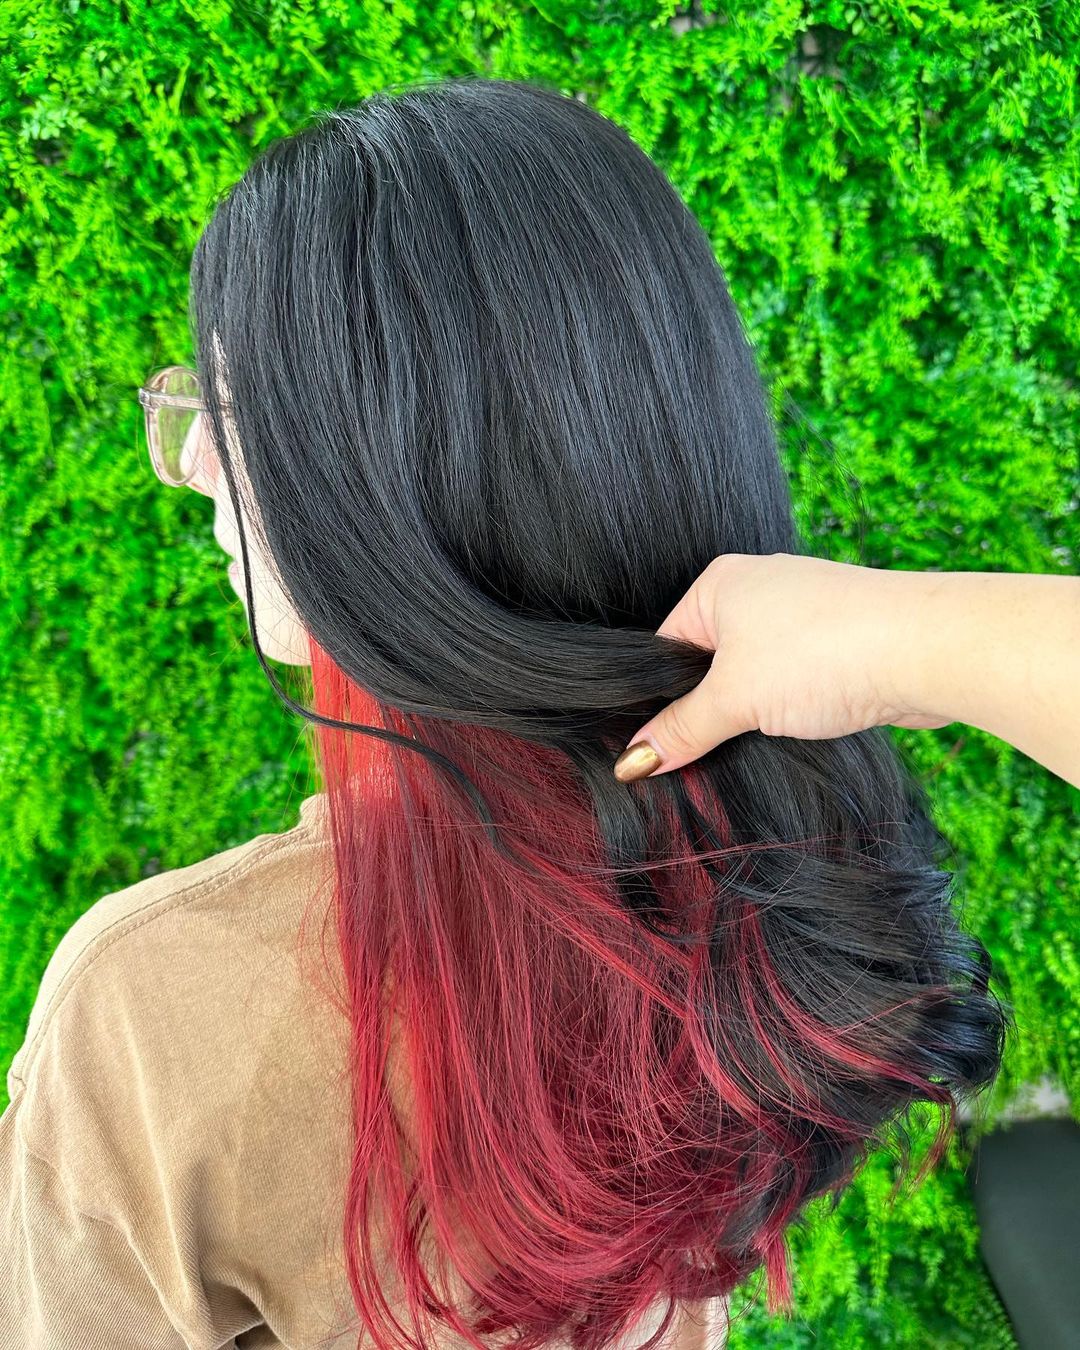 cabelo preto com balayage vermelho interior